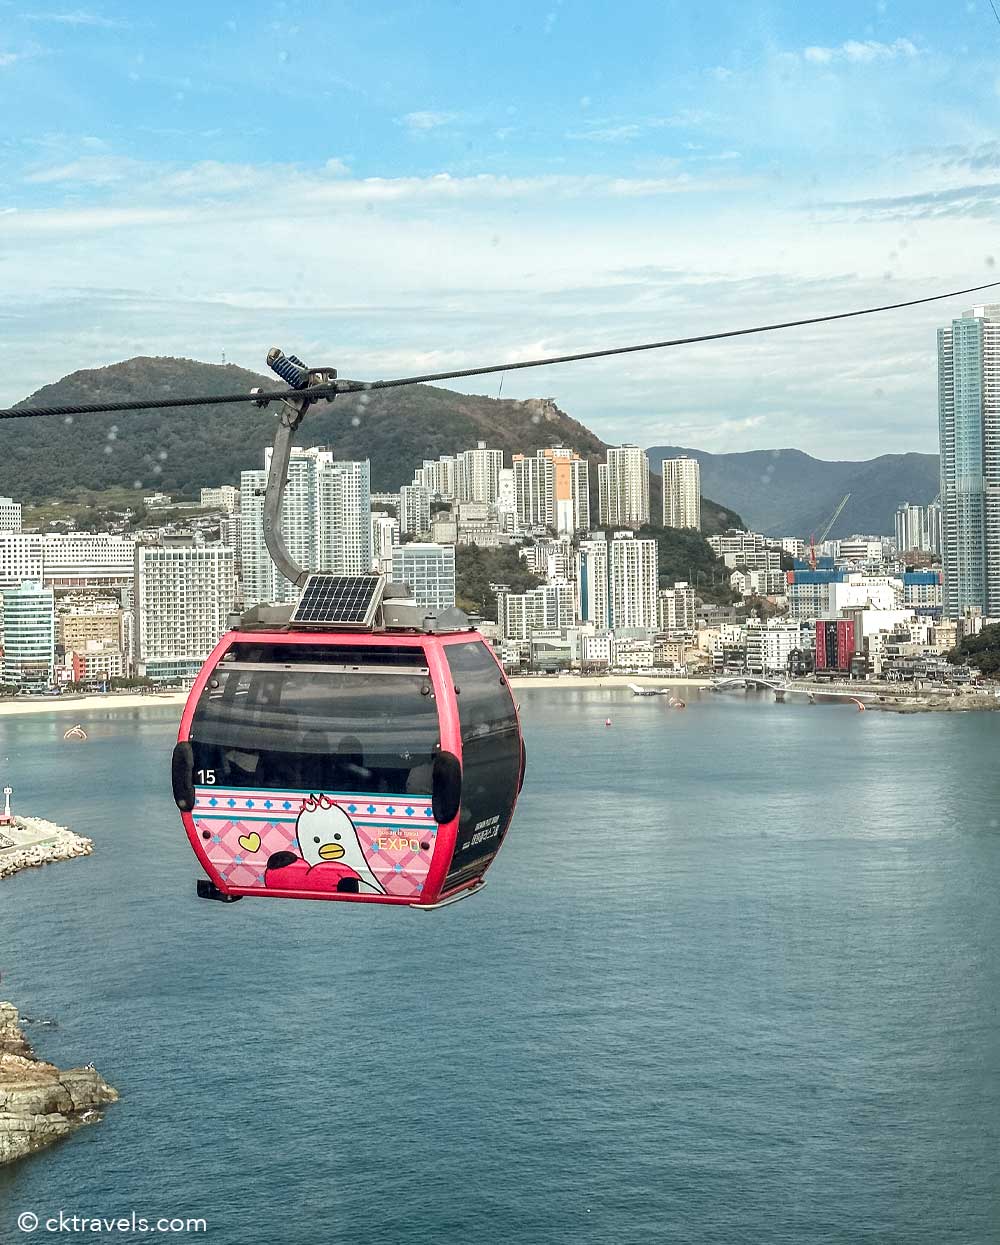 Songdo Beach Cable Car / Busan Air Cruise